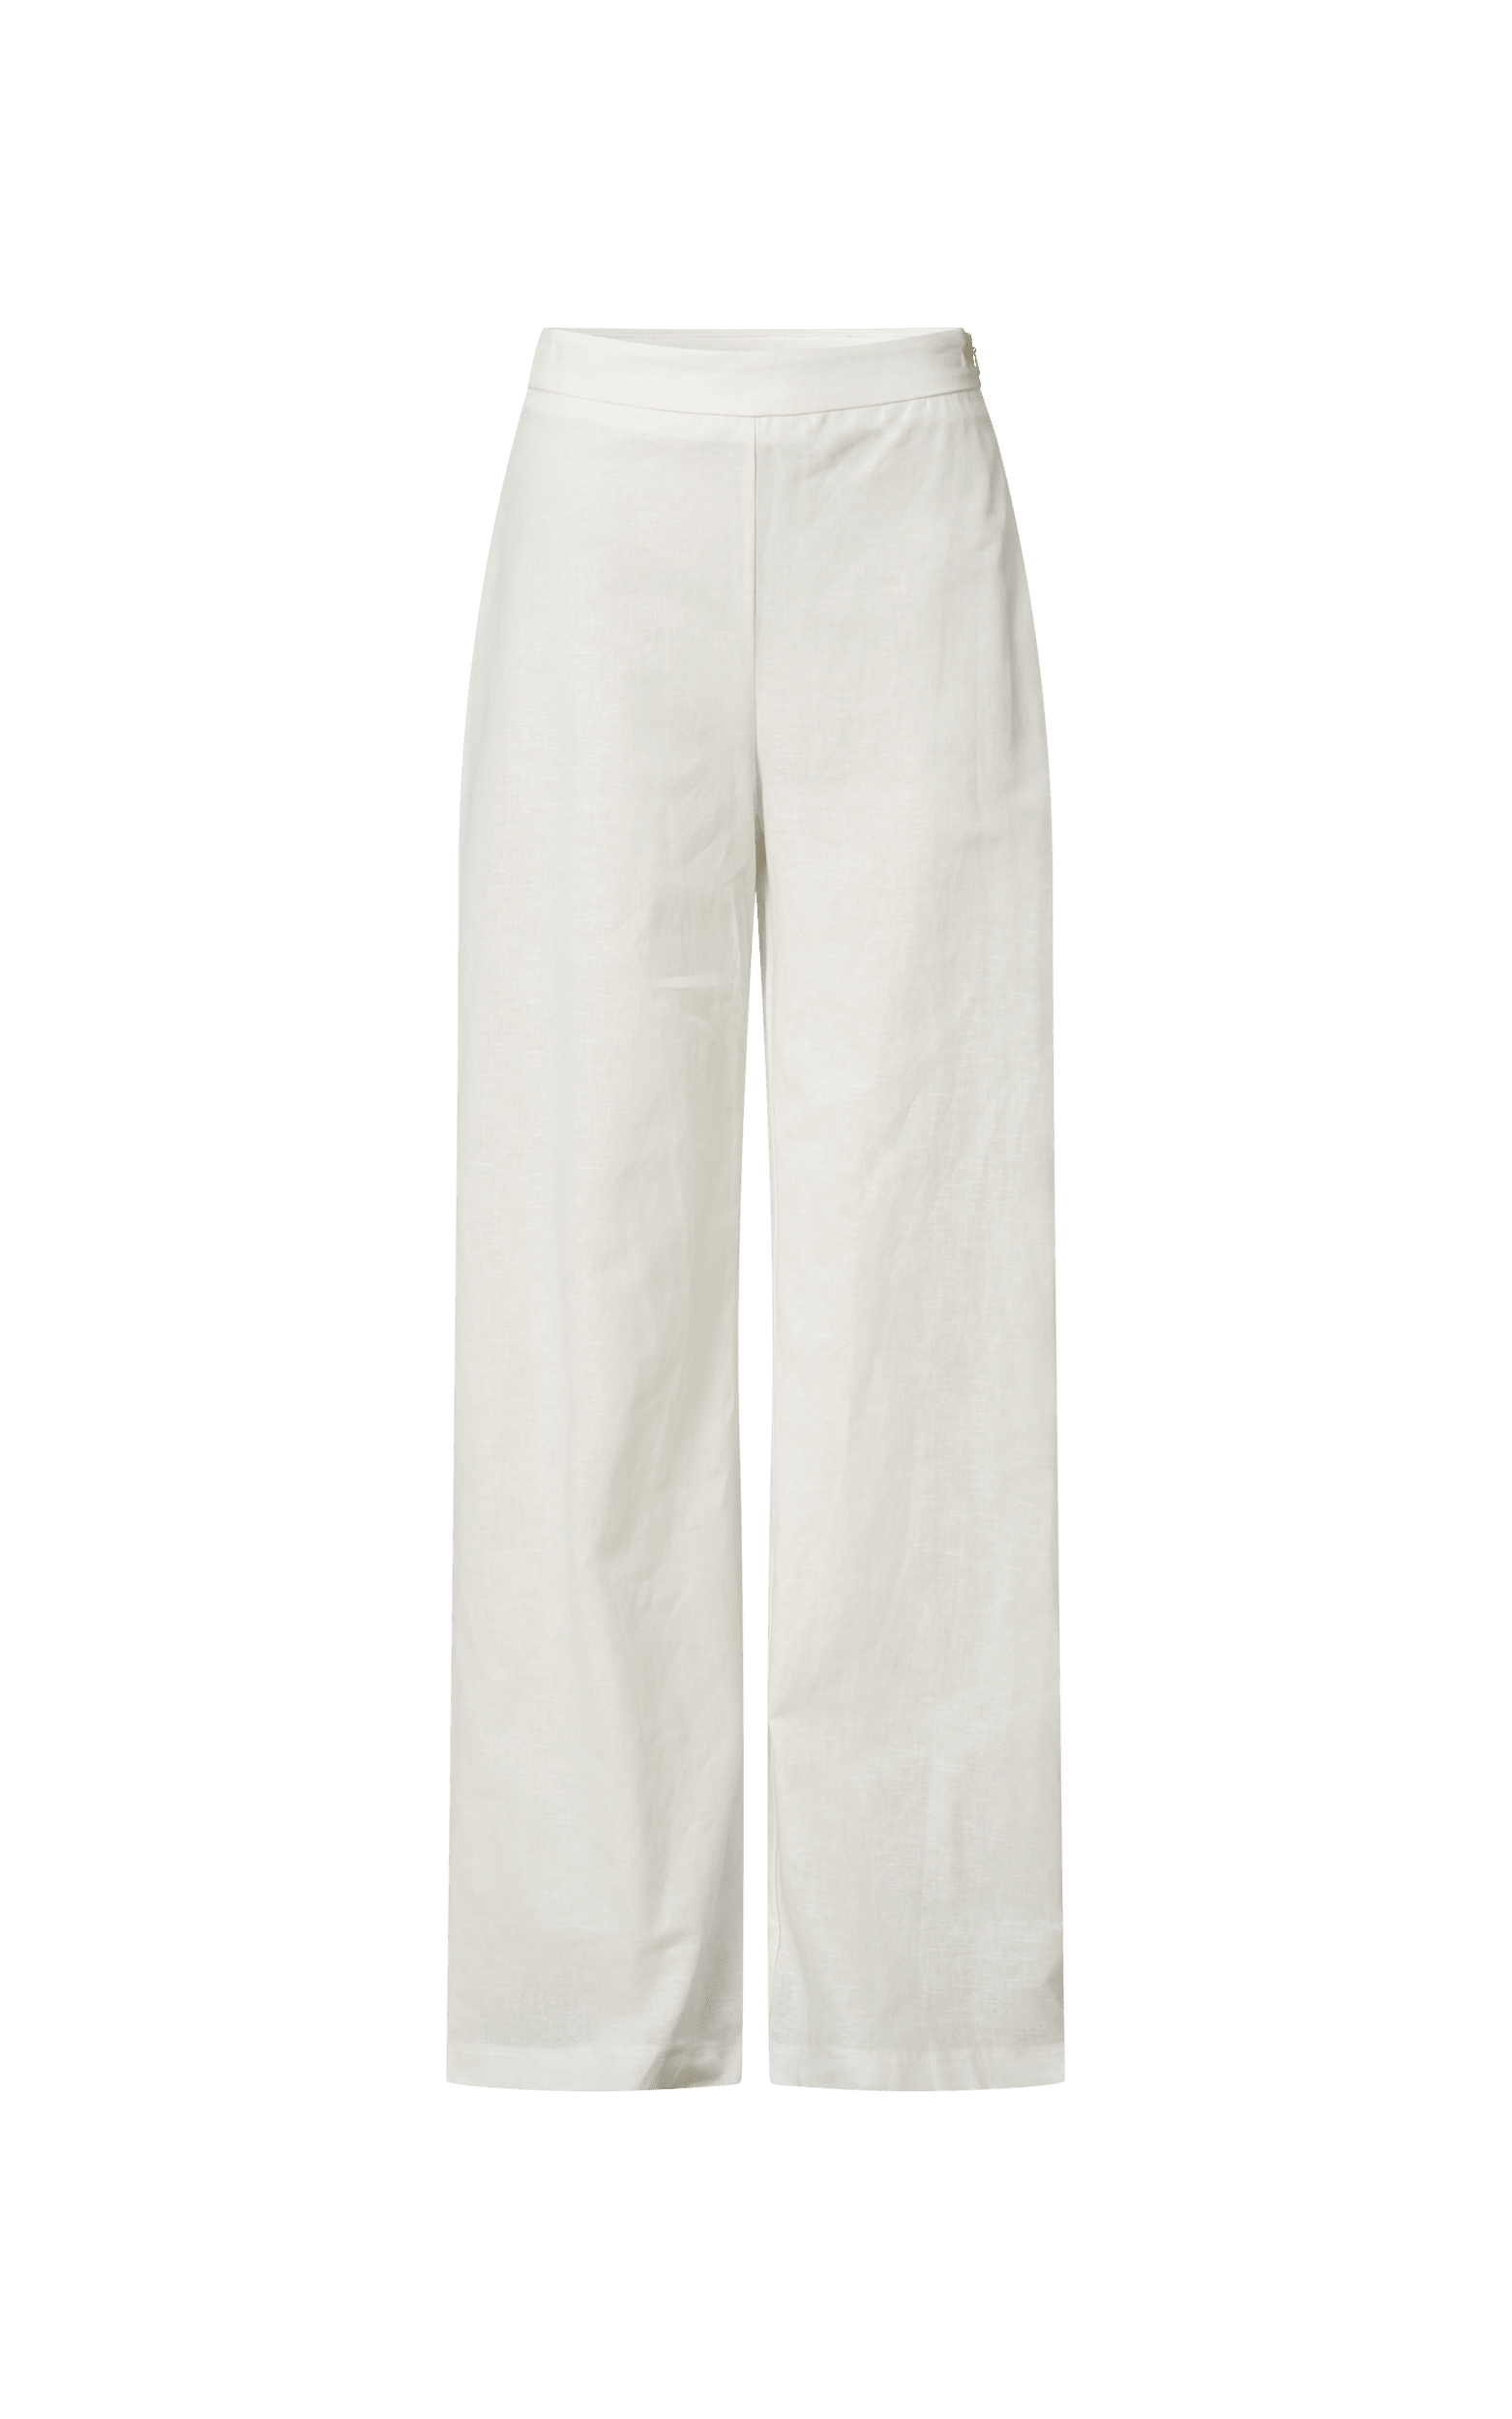 One Shoulder Peplum Top + High Waist Wide Leg Pants – StylePantry